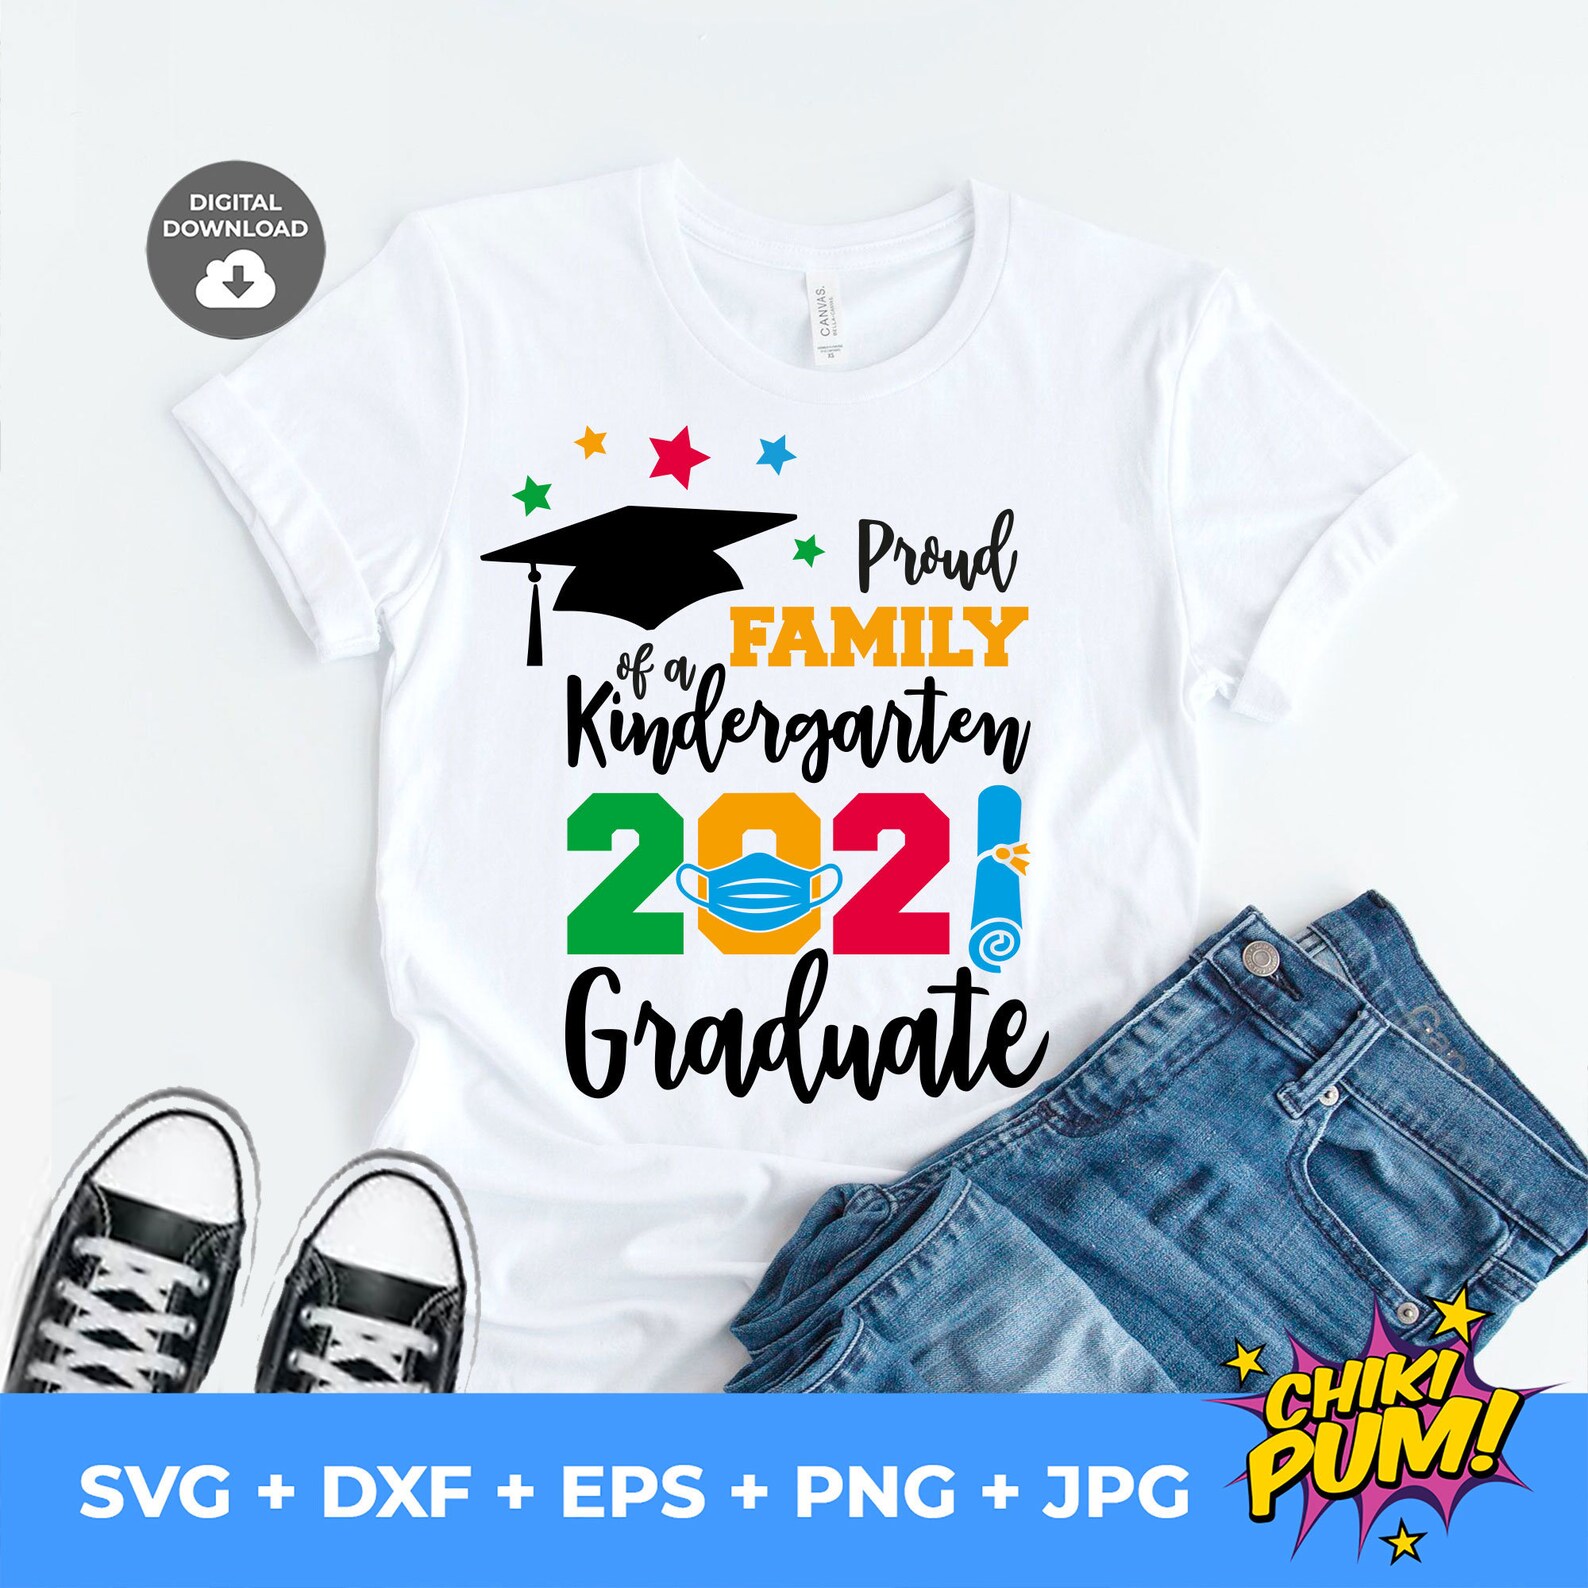 Download Proud Family of a Kindergarten 2021 Graduate SVG Kinder | Etsy